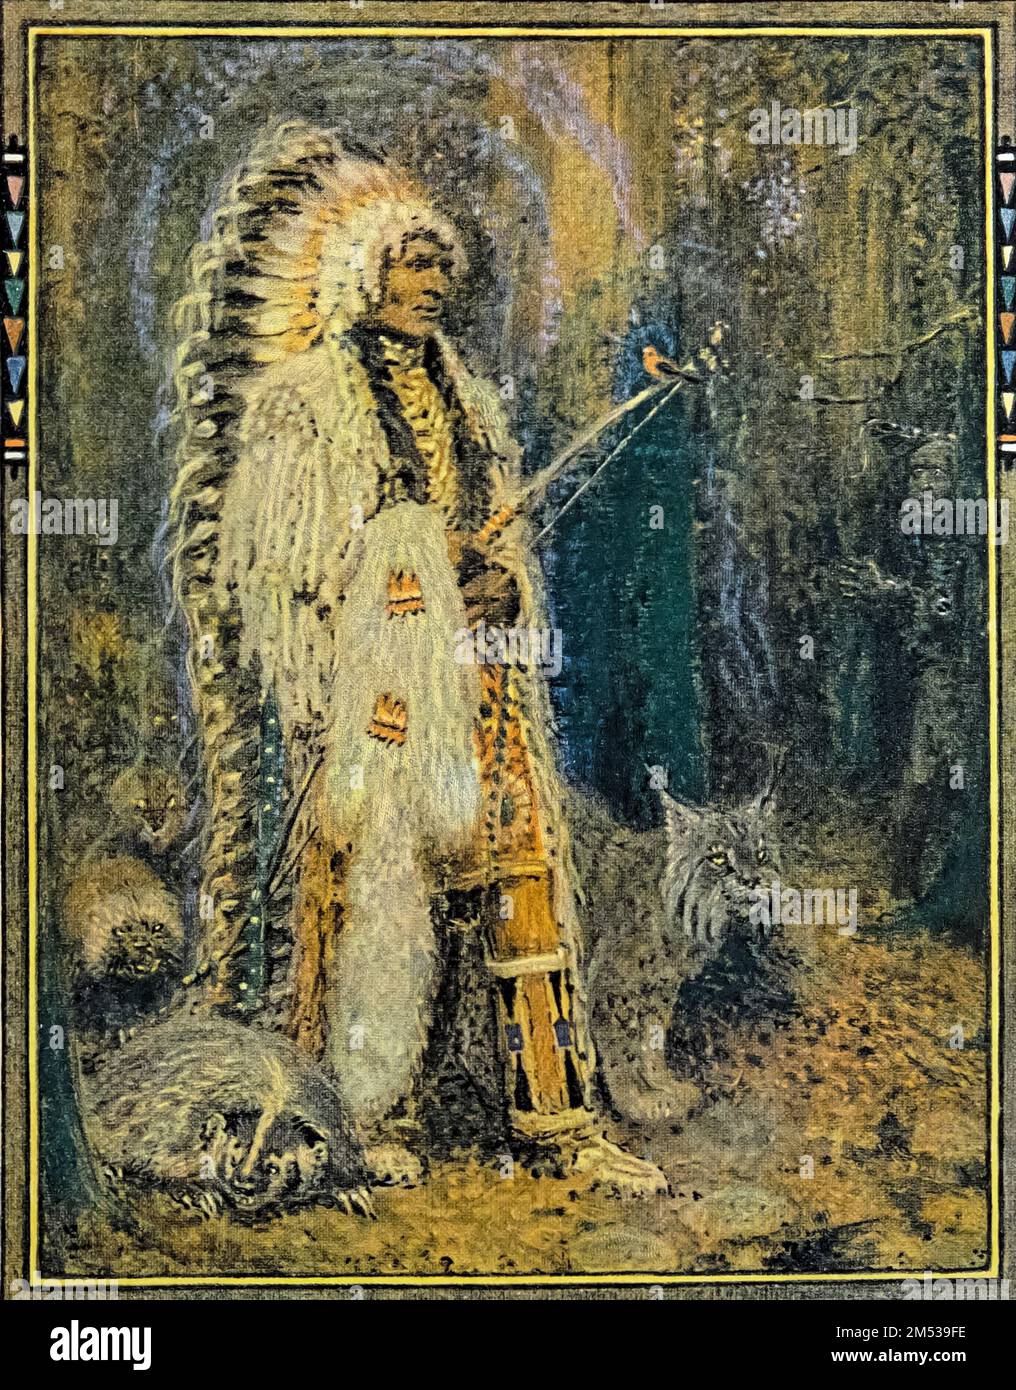 Die Männer glaubten, dass O-Jeeg ein Manito war, illustriert von John Rae aus dem Buch " American Indian Märchen " von William Trowbridge Larned, Publikationsdatum 1921 Herausgeber New York, P. F. Volland Stockfoto